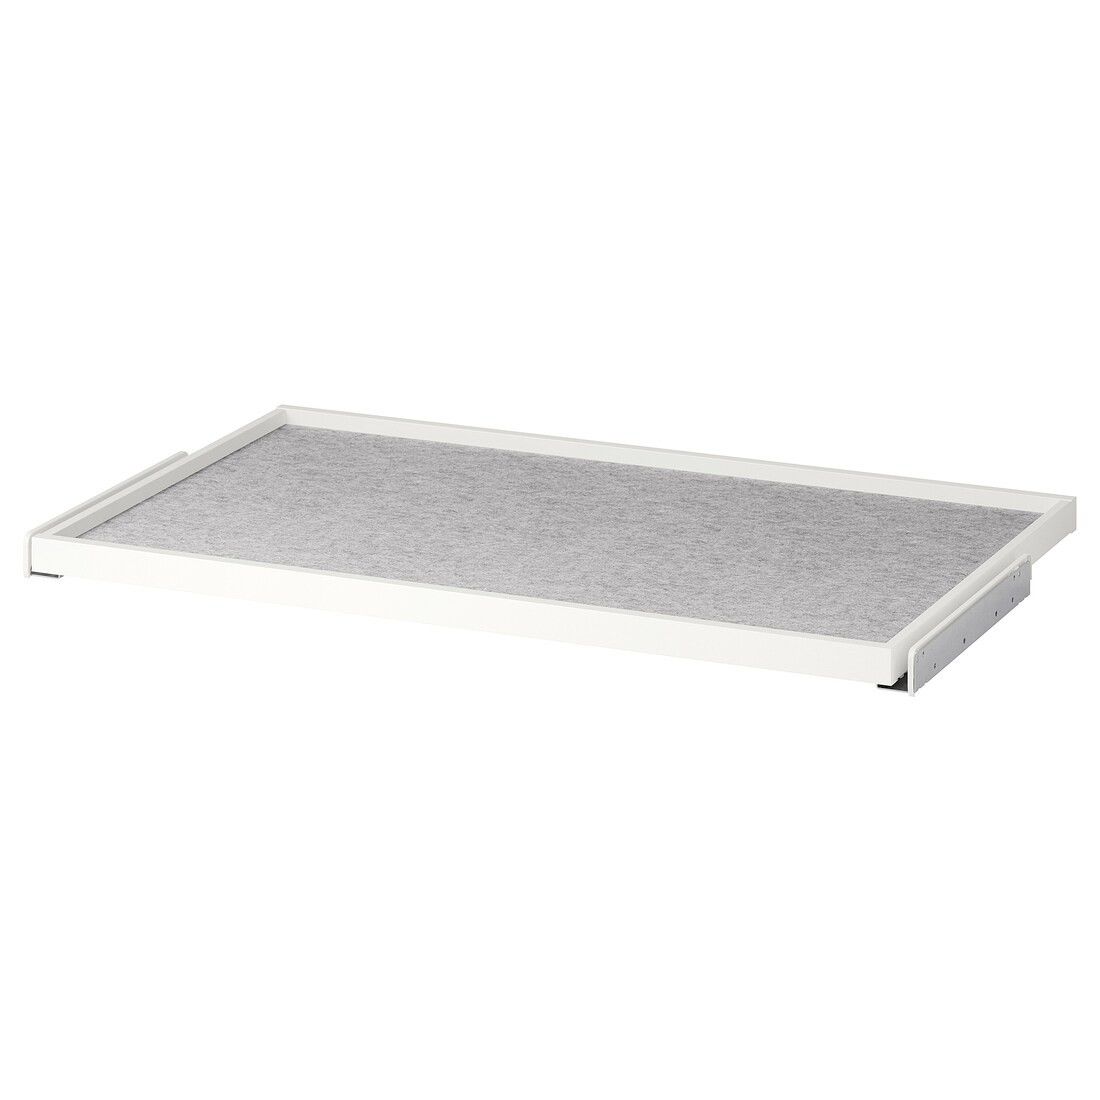 KOMPLEMENT Висувний лоток з килимком для шухляди, білий / світло-сірий, 100x58 см